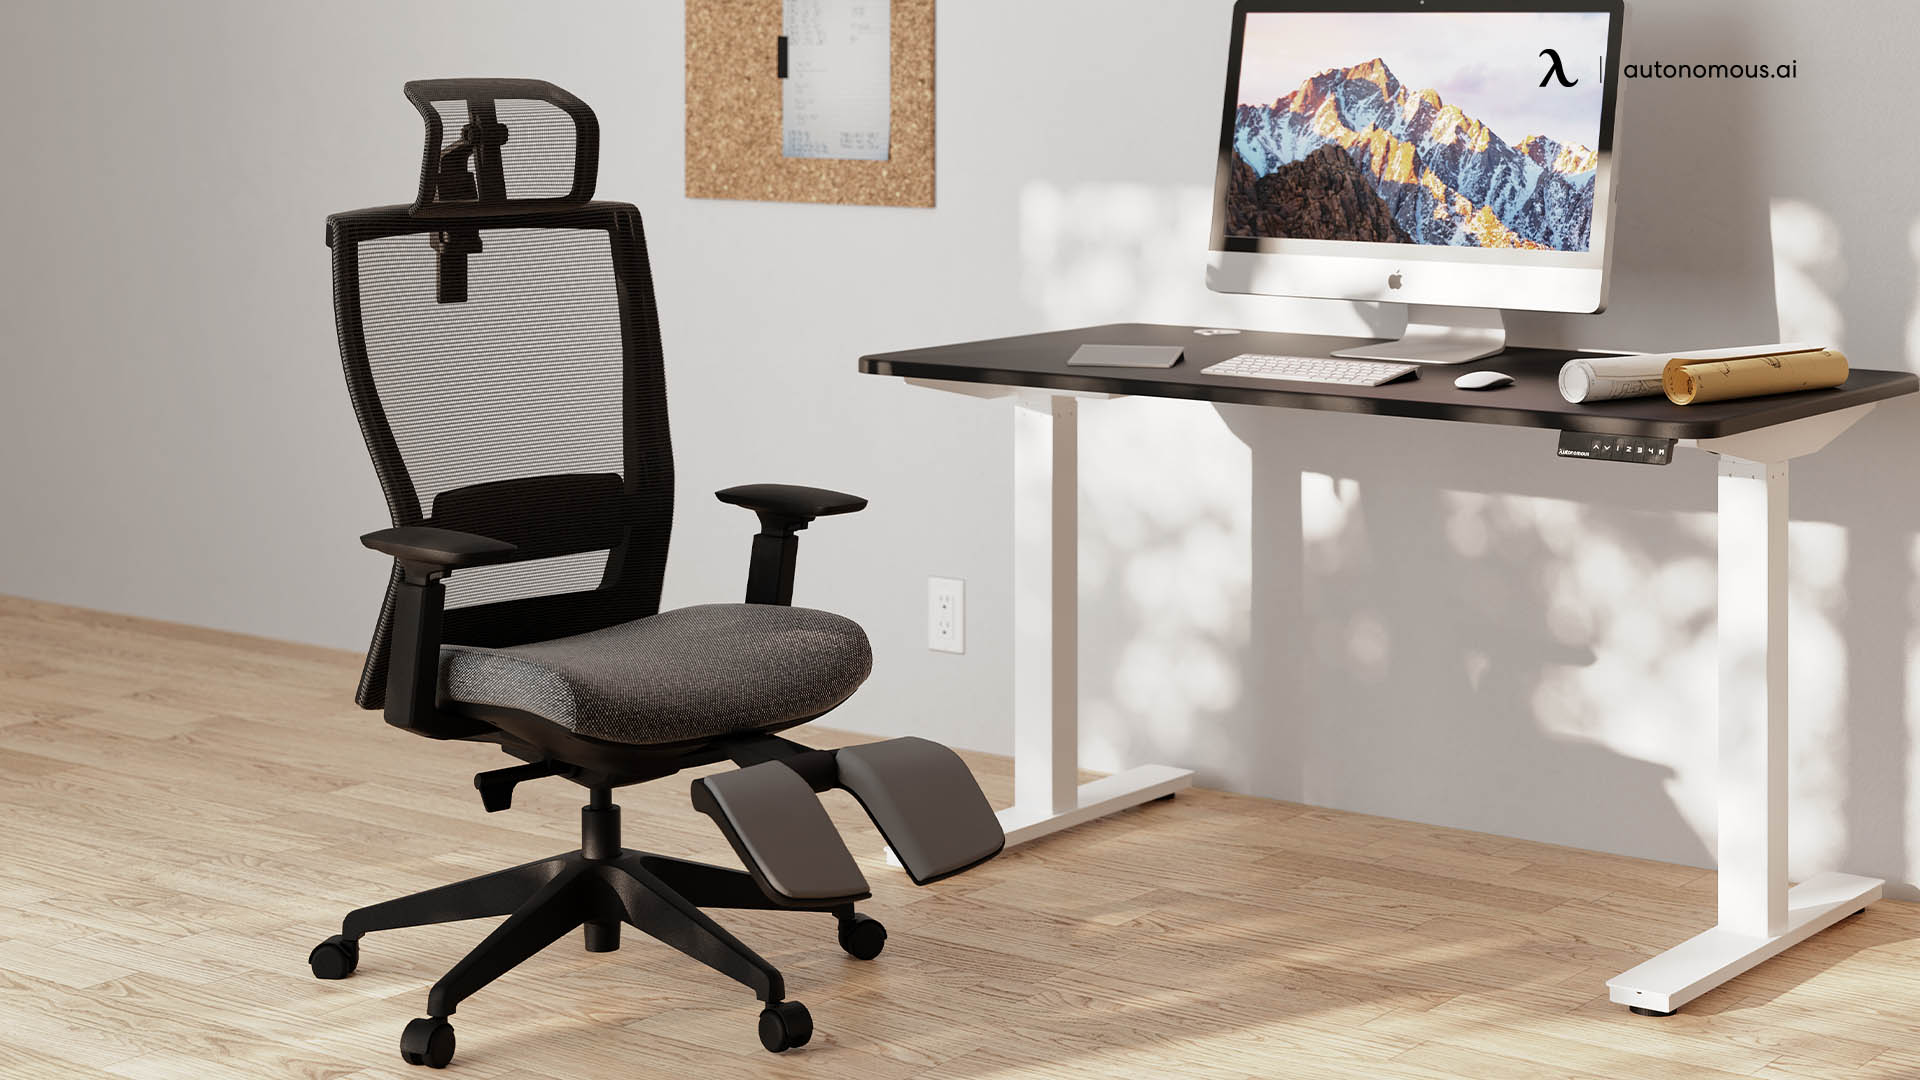 ErgoChair Recline modern office chair with wheels